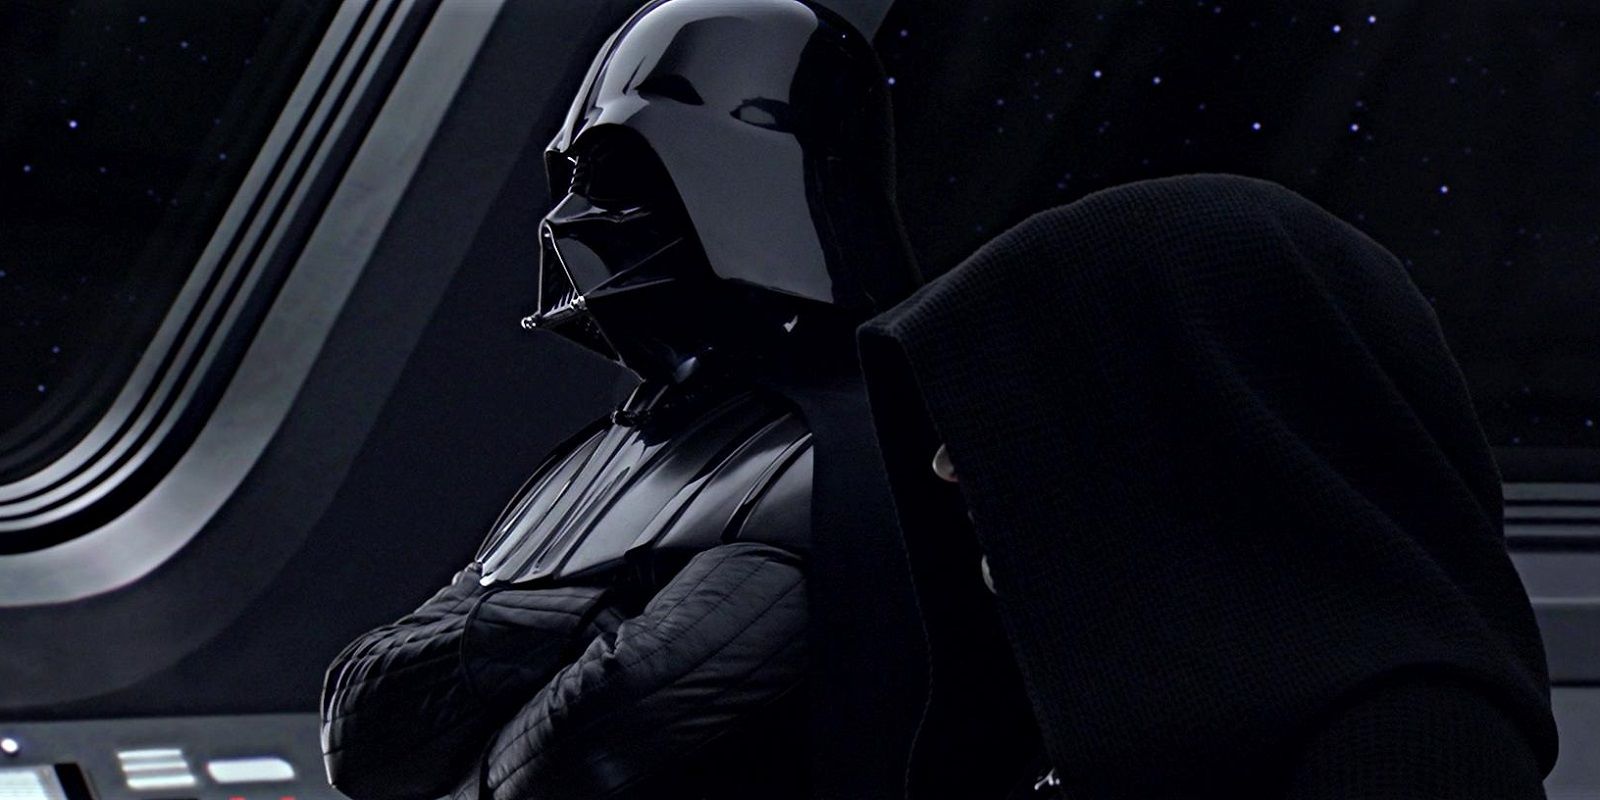 Darth Vader and Darth Sidious in Star Wars